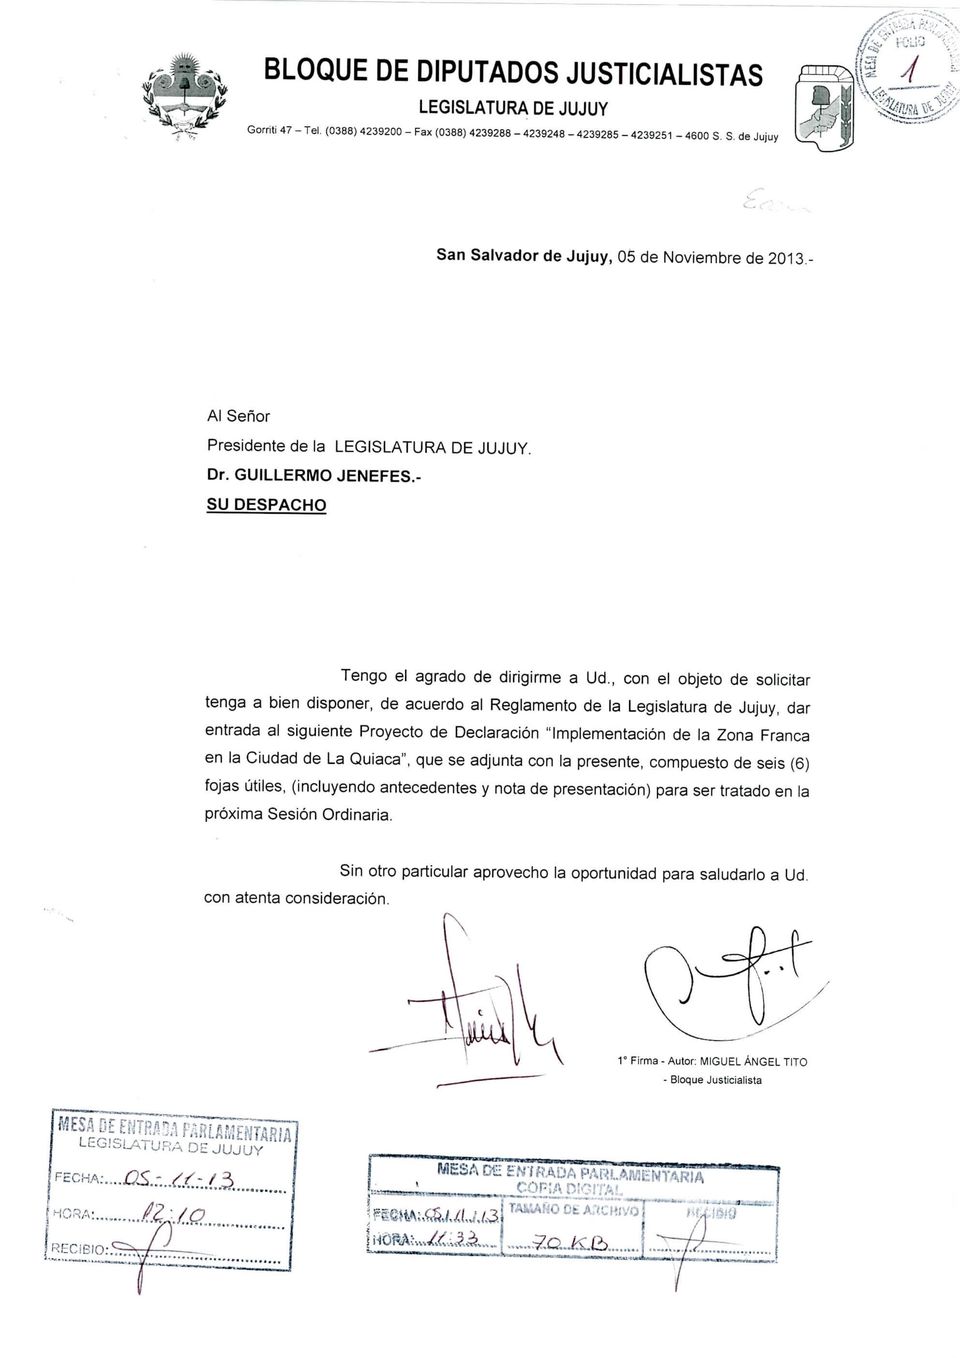 , con el objeto de solicitar tenga a bien disponer, de acuerdo al Reglamento de la Legislatura de Jujuy, dar entrada al siguiente Proyecto de Declaración "Implementación de la Zona Franca en la